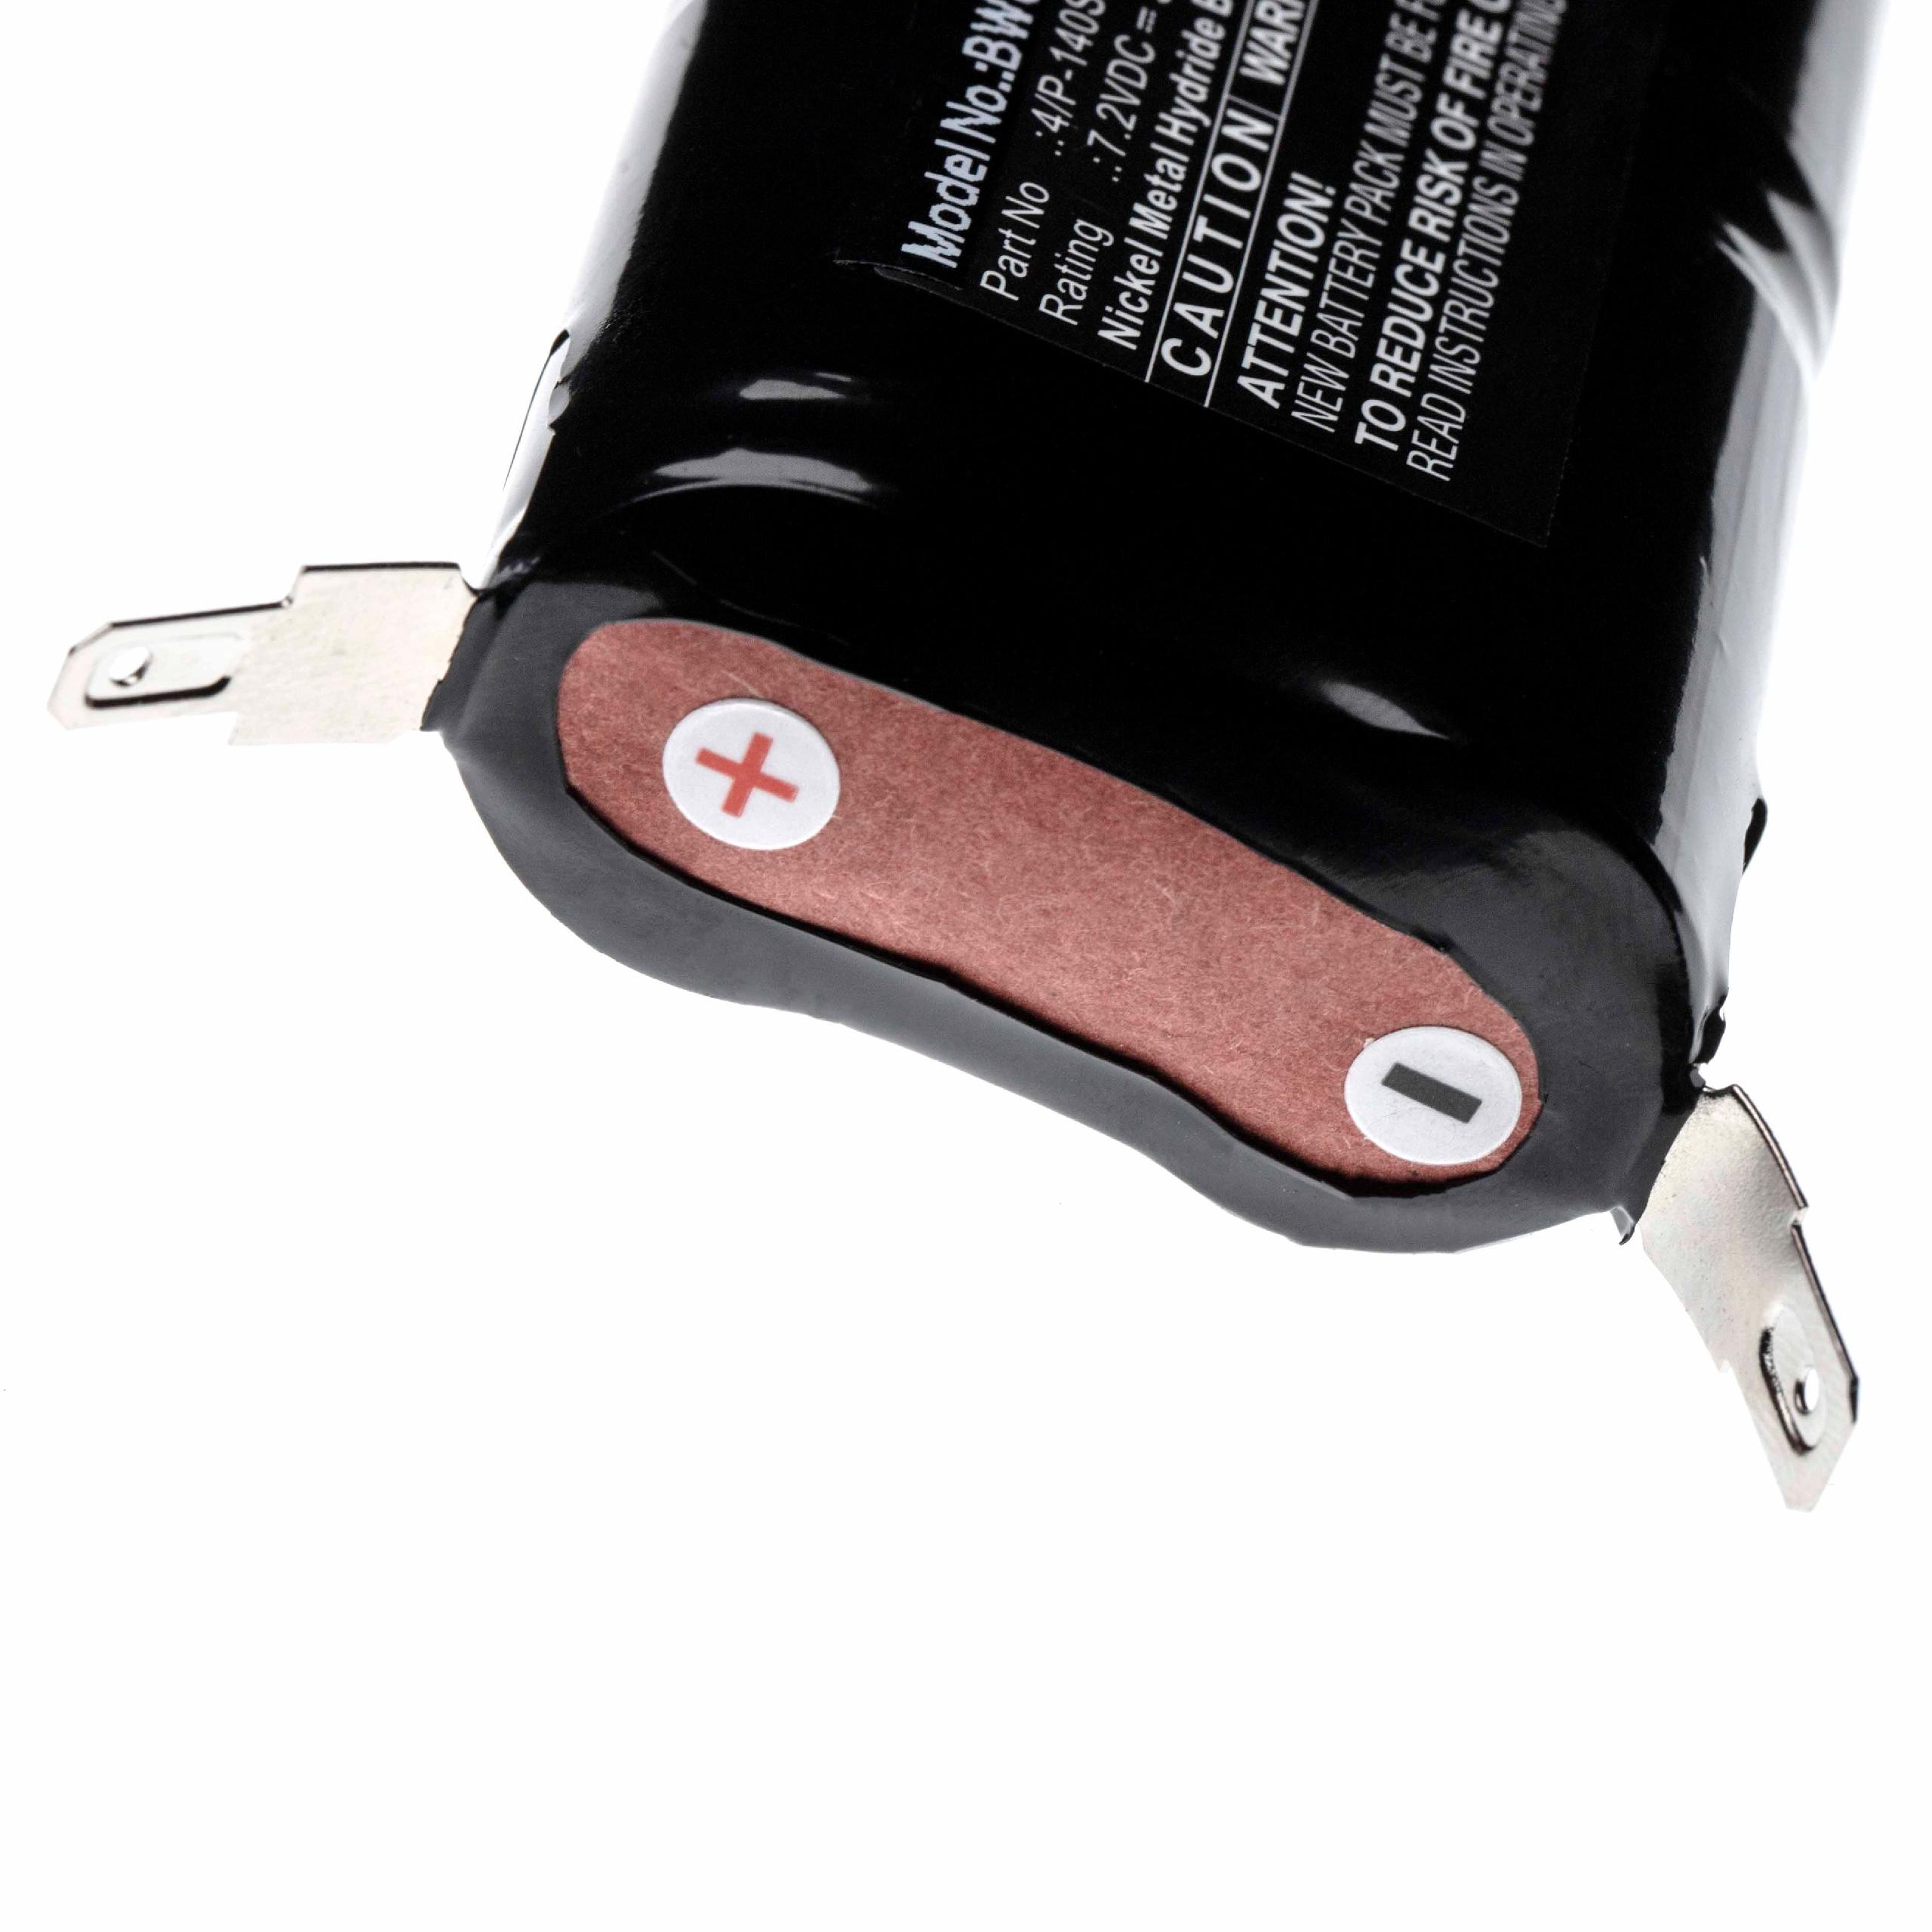 Batterie remplace Makita BCM-678135-1, 678135-1, 678132-7, 678114-9 pour aspirateur - 3000mAh 7,2V NiMH